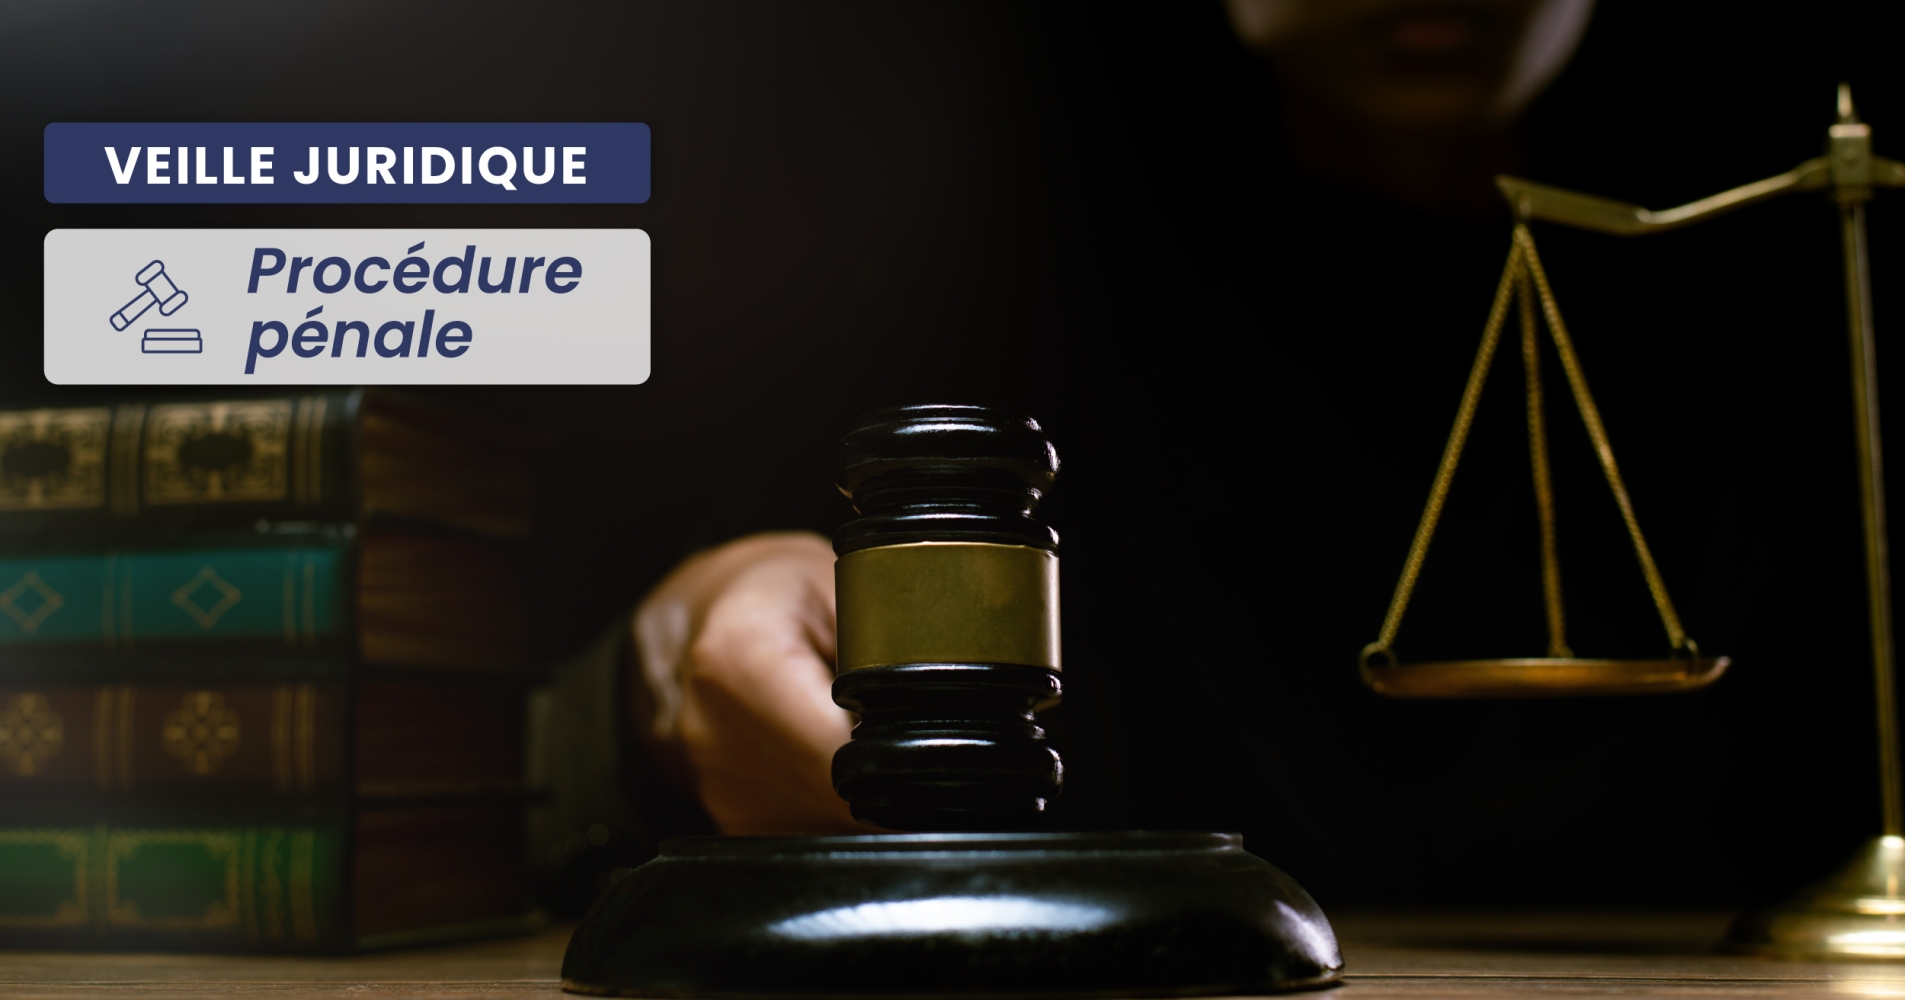 PROCÉDURE PÉNALE – Recueil du plan de vidéoprotection de la commune par les officiers et agents de police judiciaire : la délivrance d’une réquisition n’est pas nécessaire 